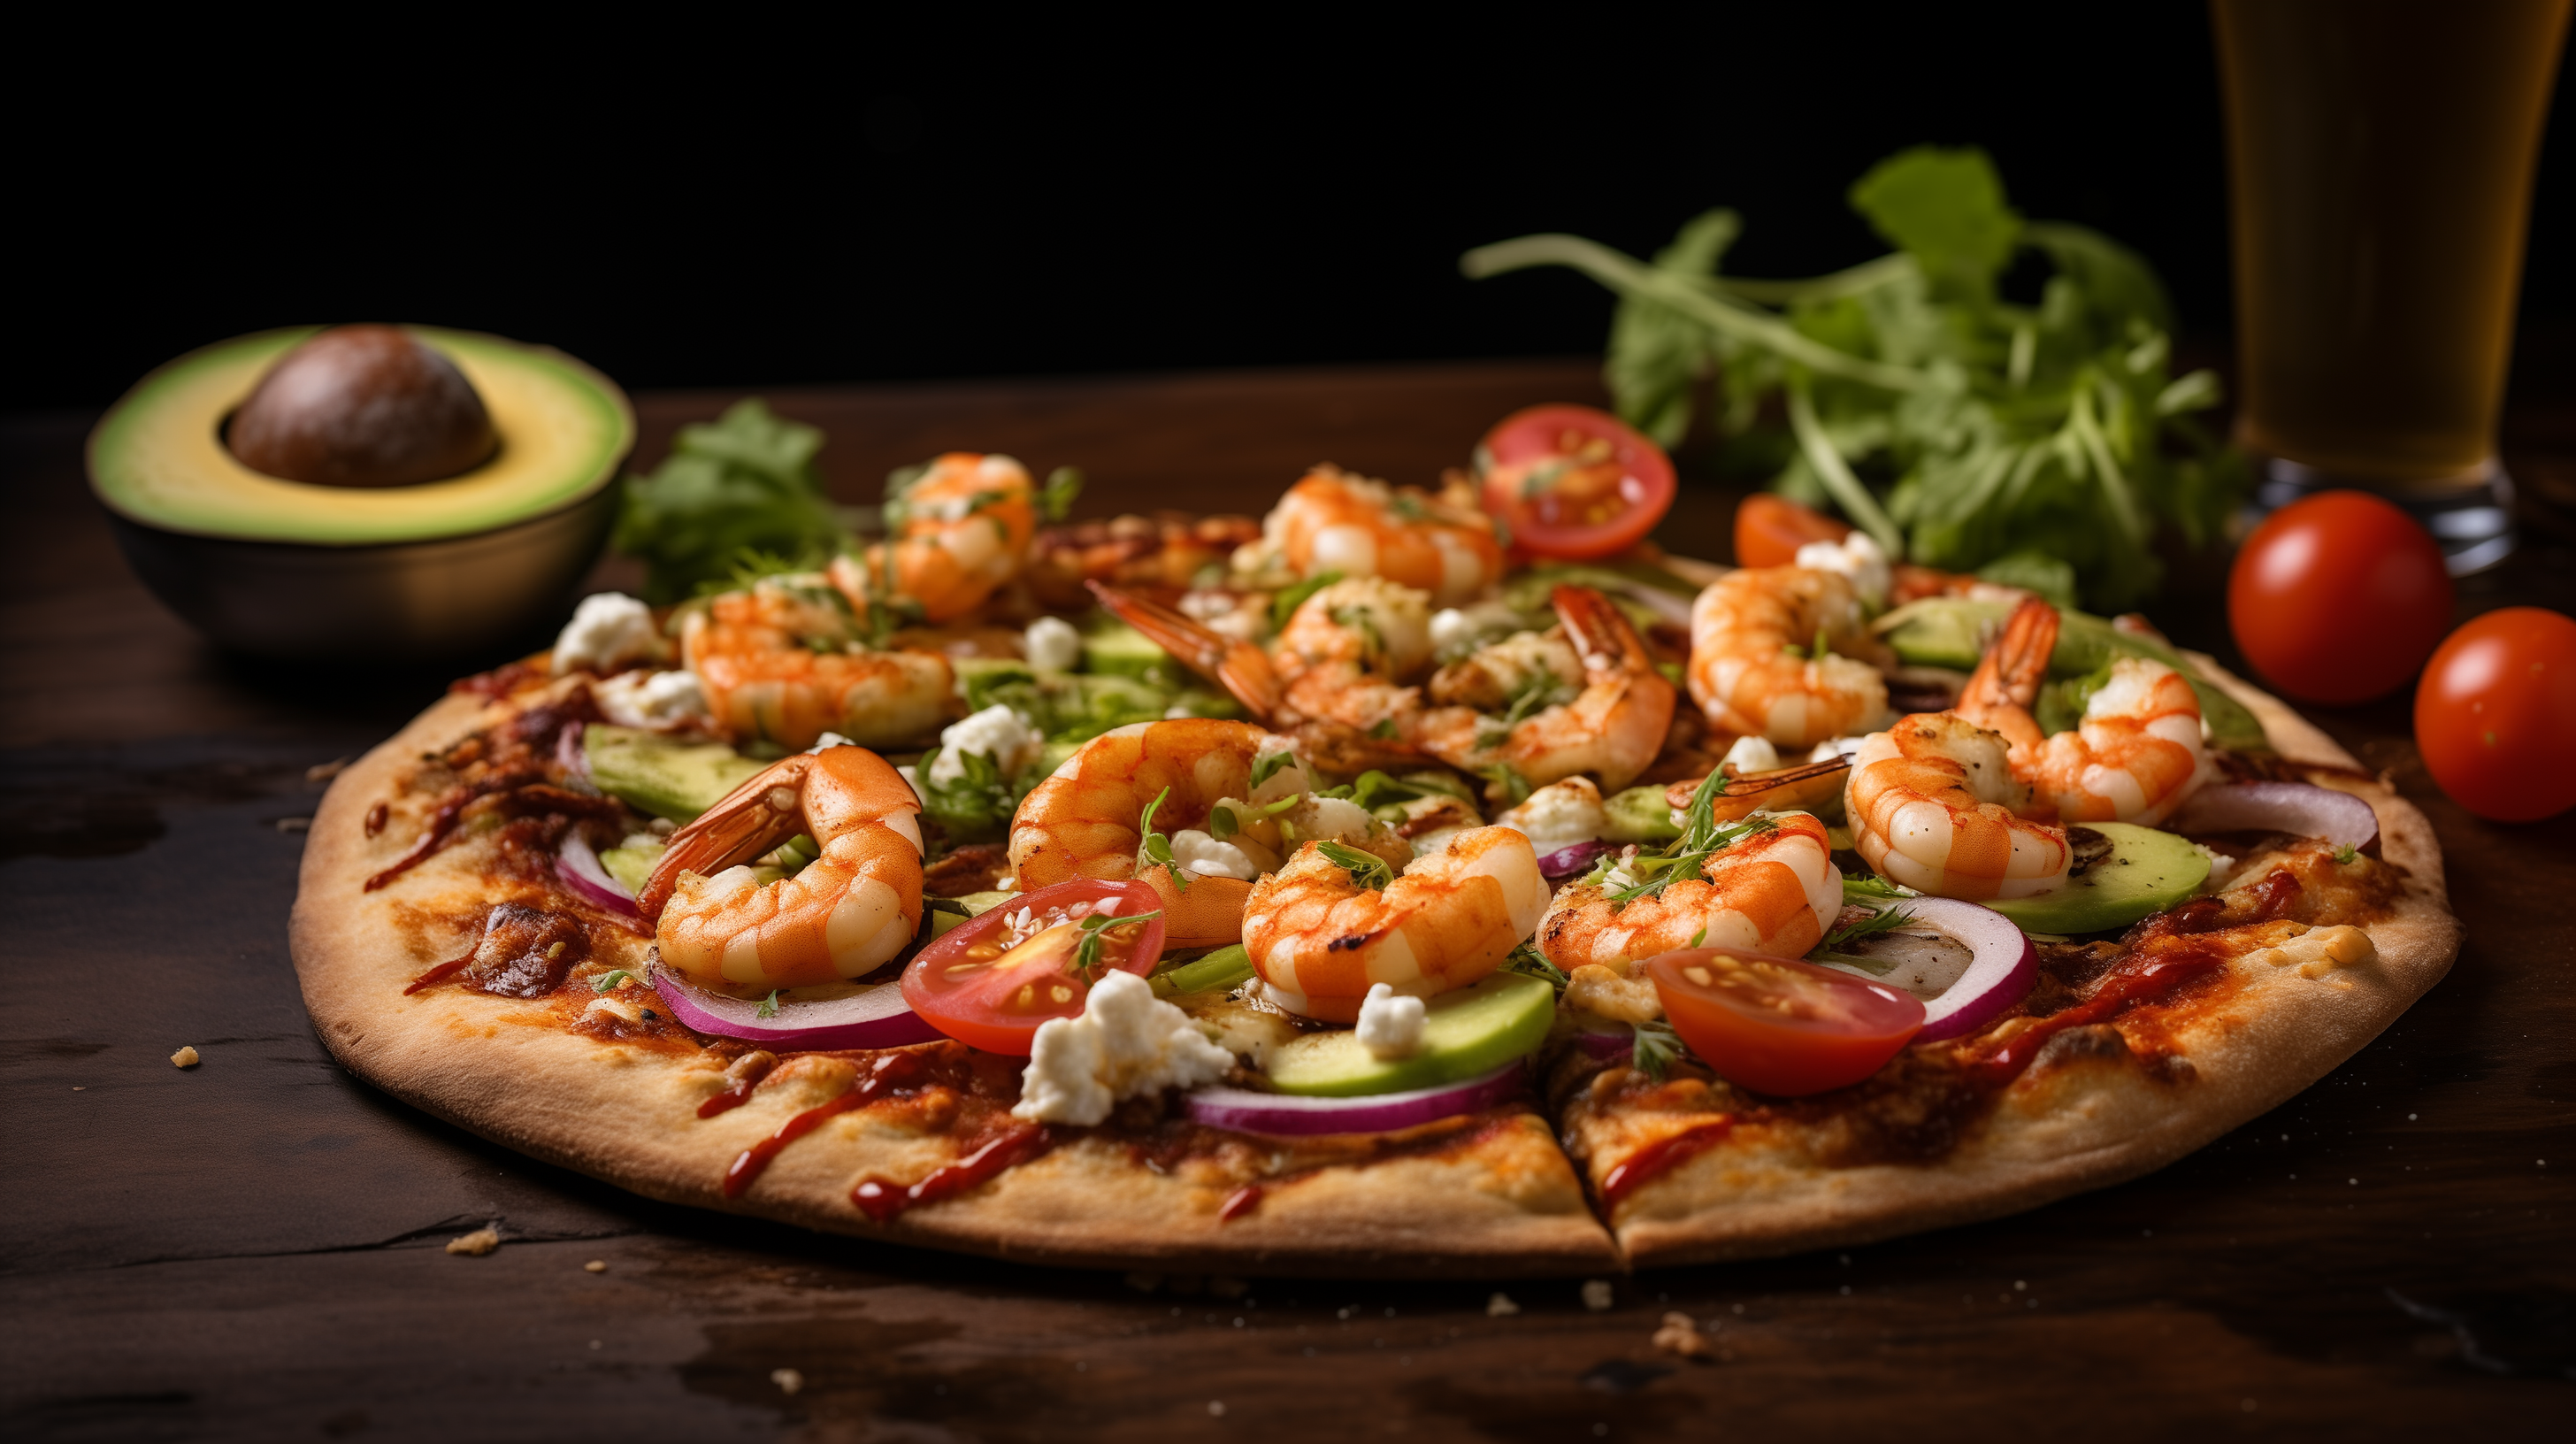 Image of a shrimp and avocado pizza.